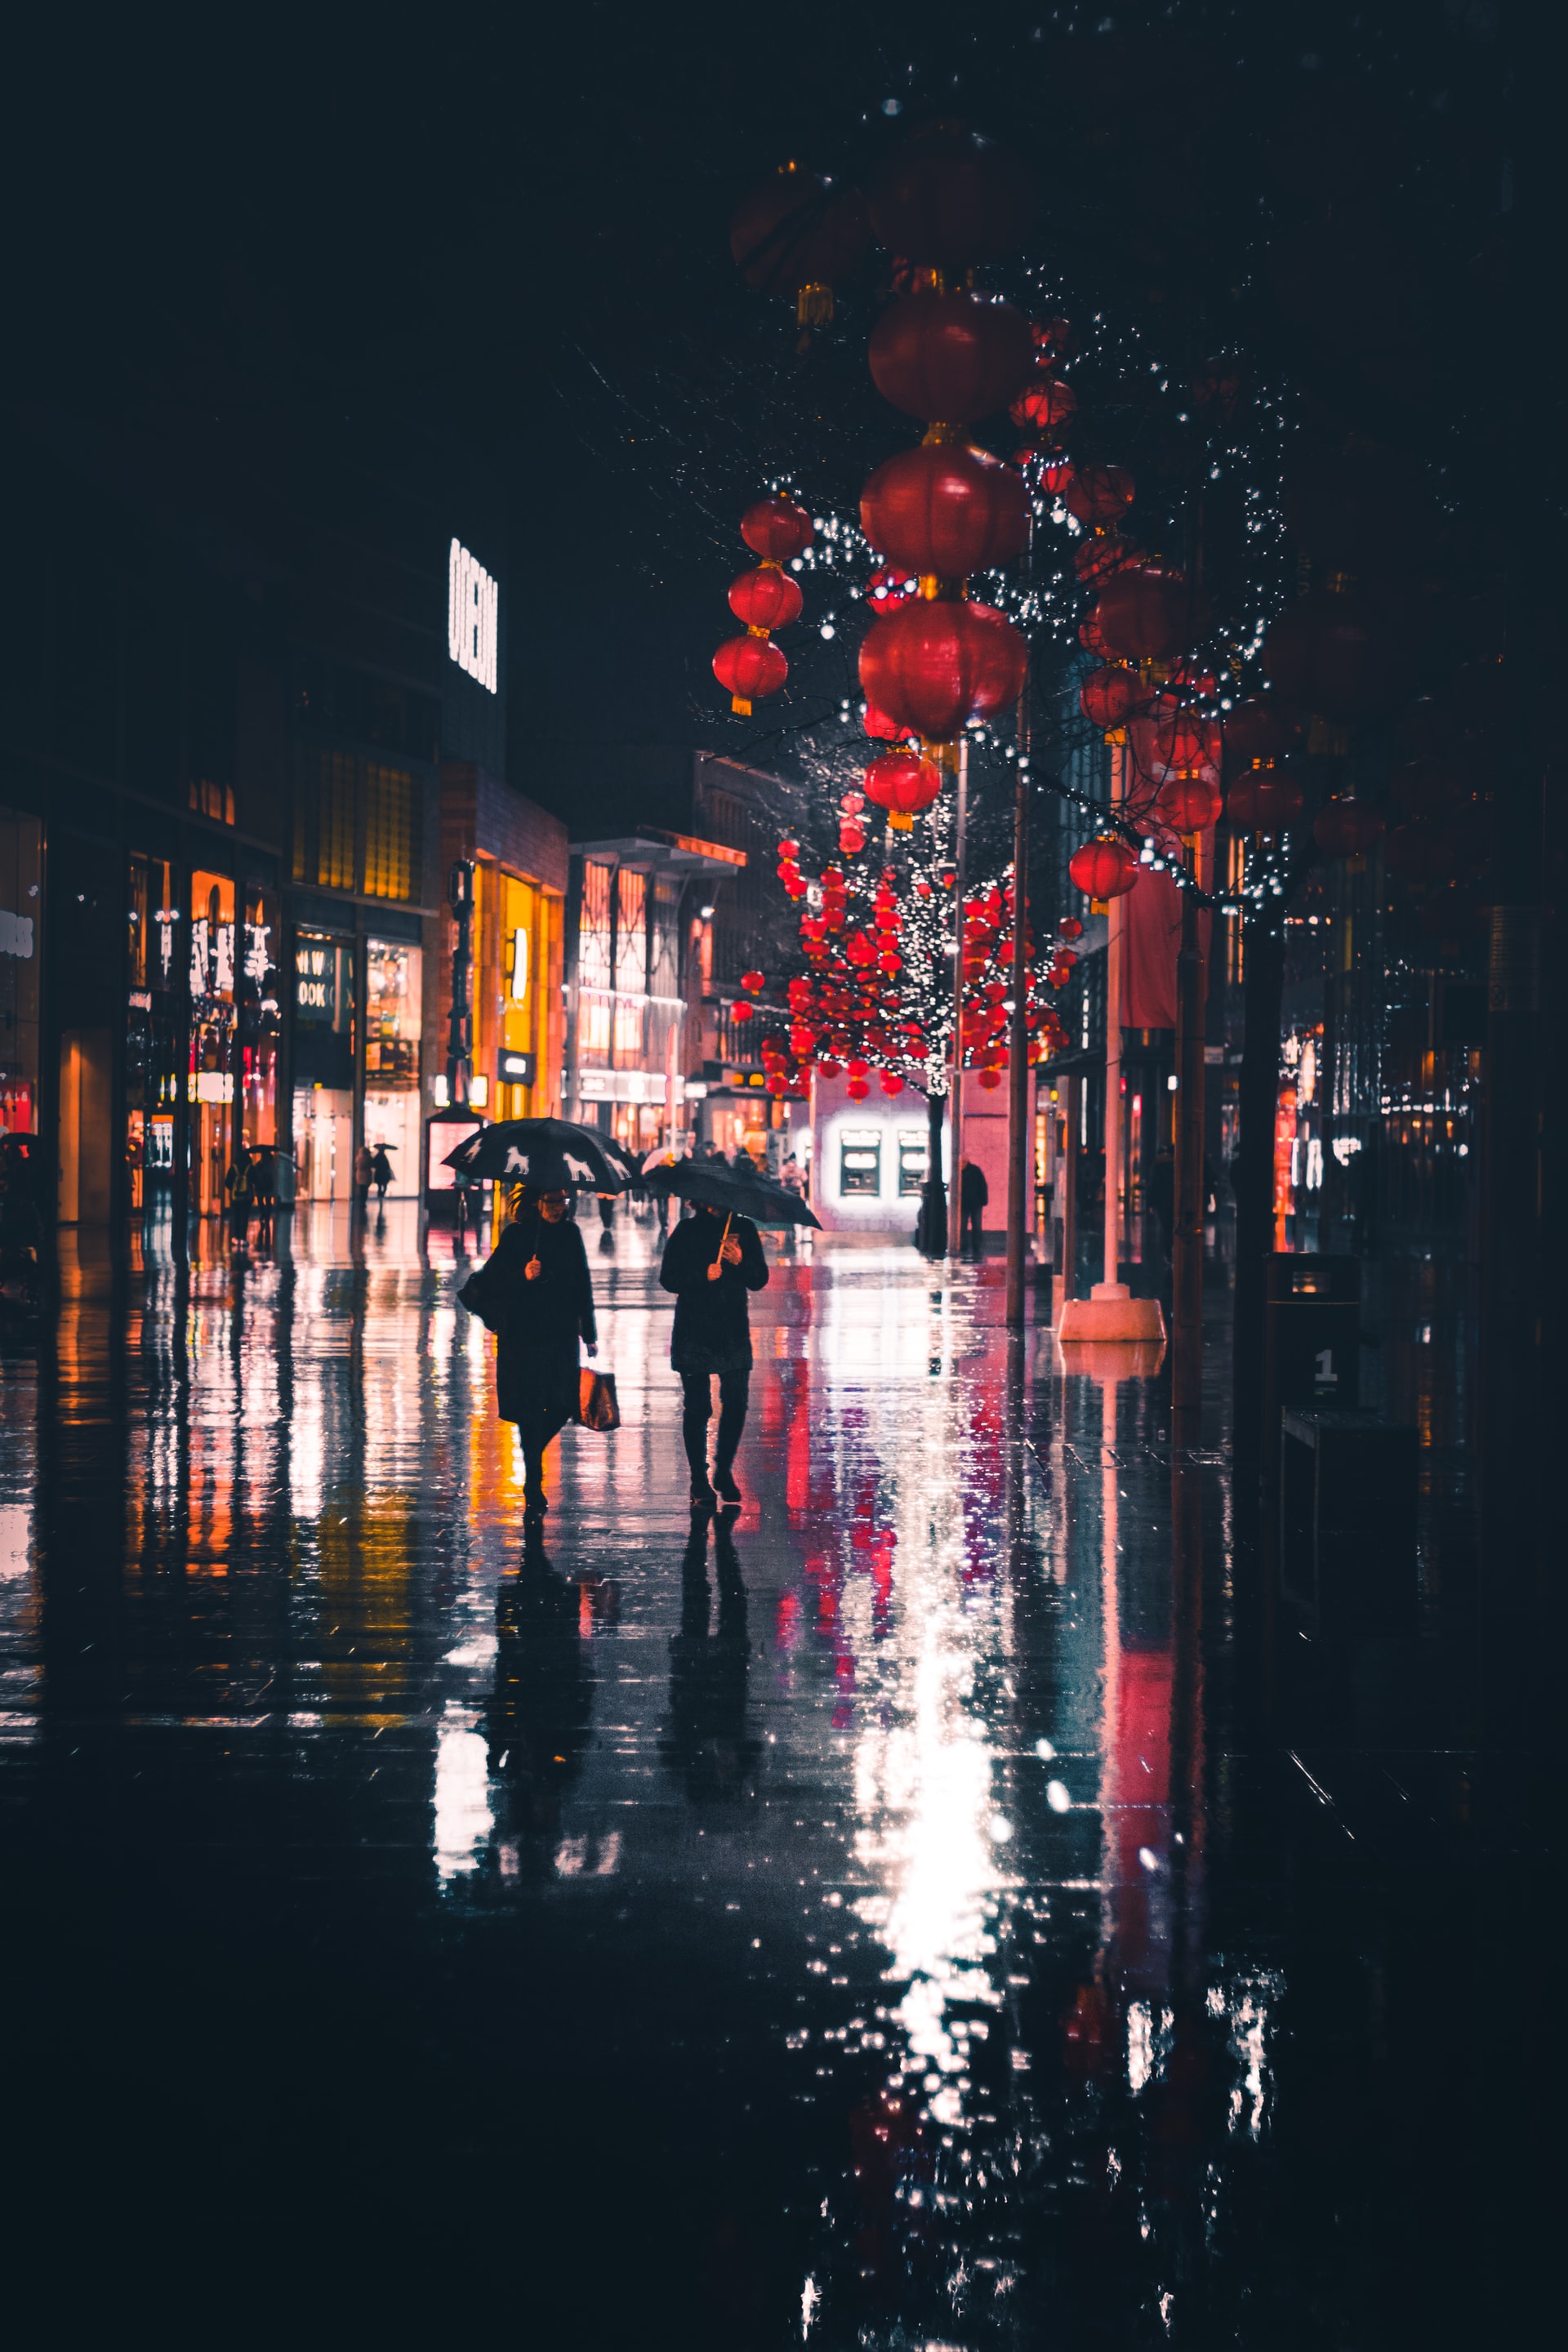 Tham quan những bức ảnh đường phố về đêm mưa với ánh đèn đa sắc màu sẽ khiến bạn không khỏi bị cuốn hút bởi sự rực rỡ và sôi động. Được chụp những khoảnh khắc tuyệt đẹp của phố đêm cùng những điểm sáng long lanh, bạn sẽ có những trải nghiệm thật sự tuyệt vời.